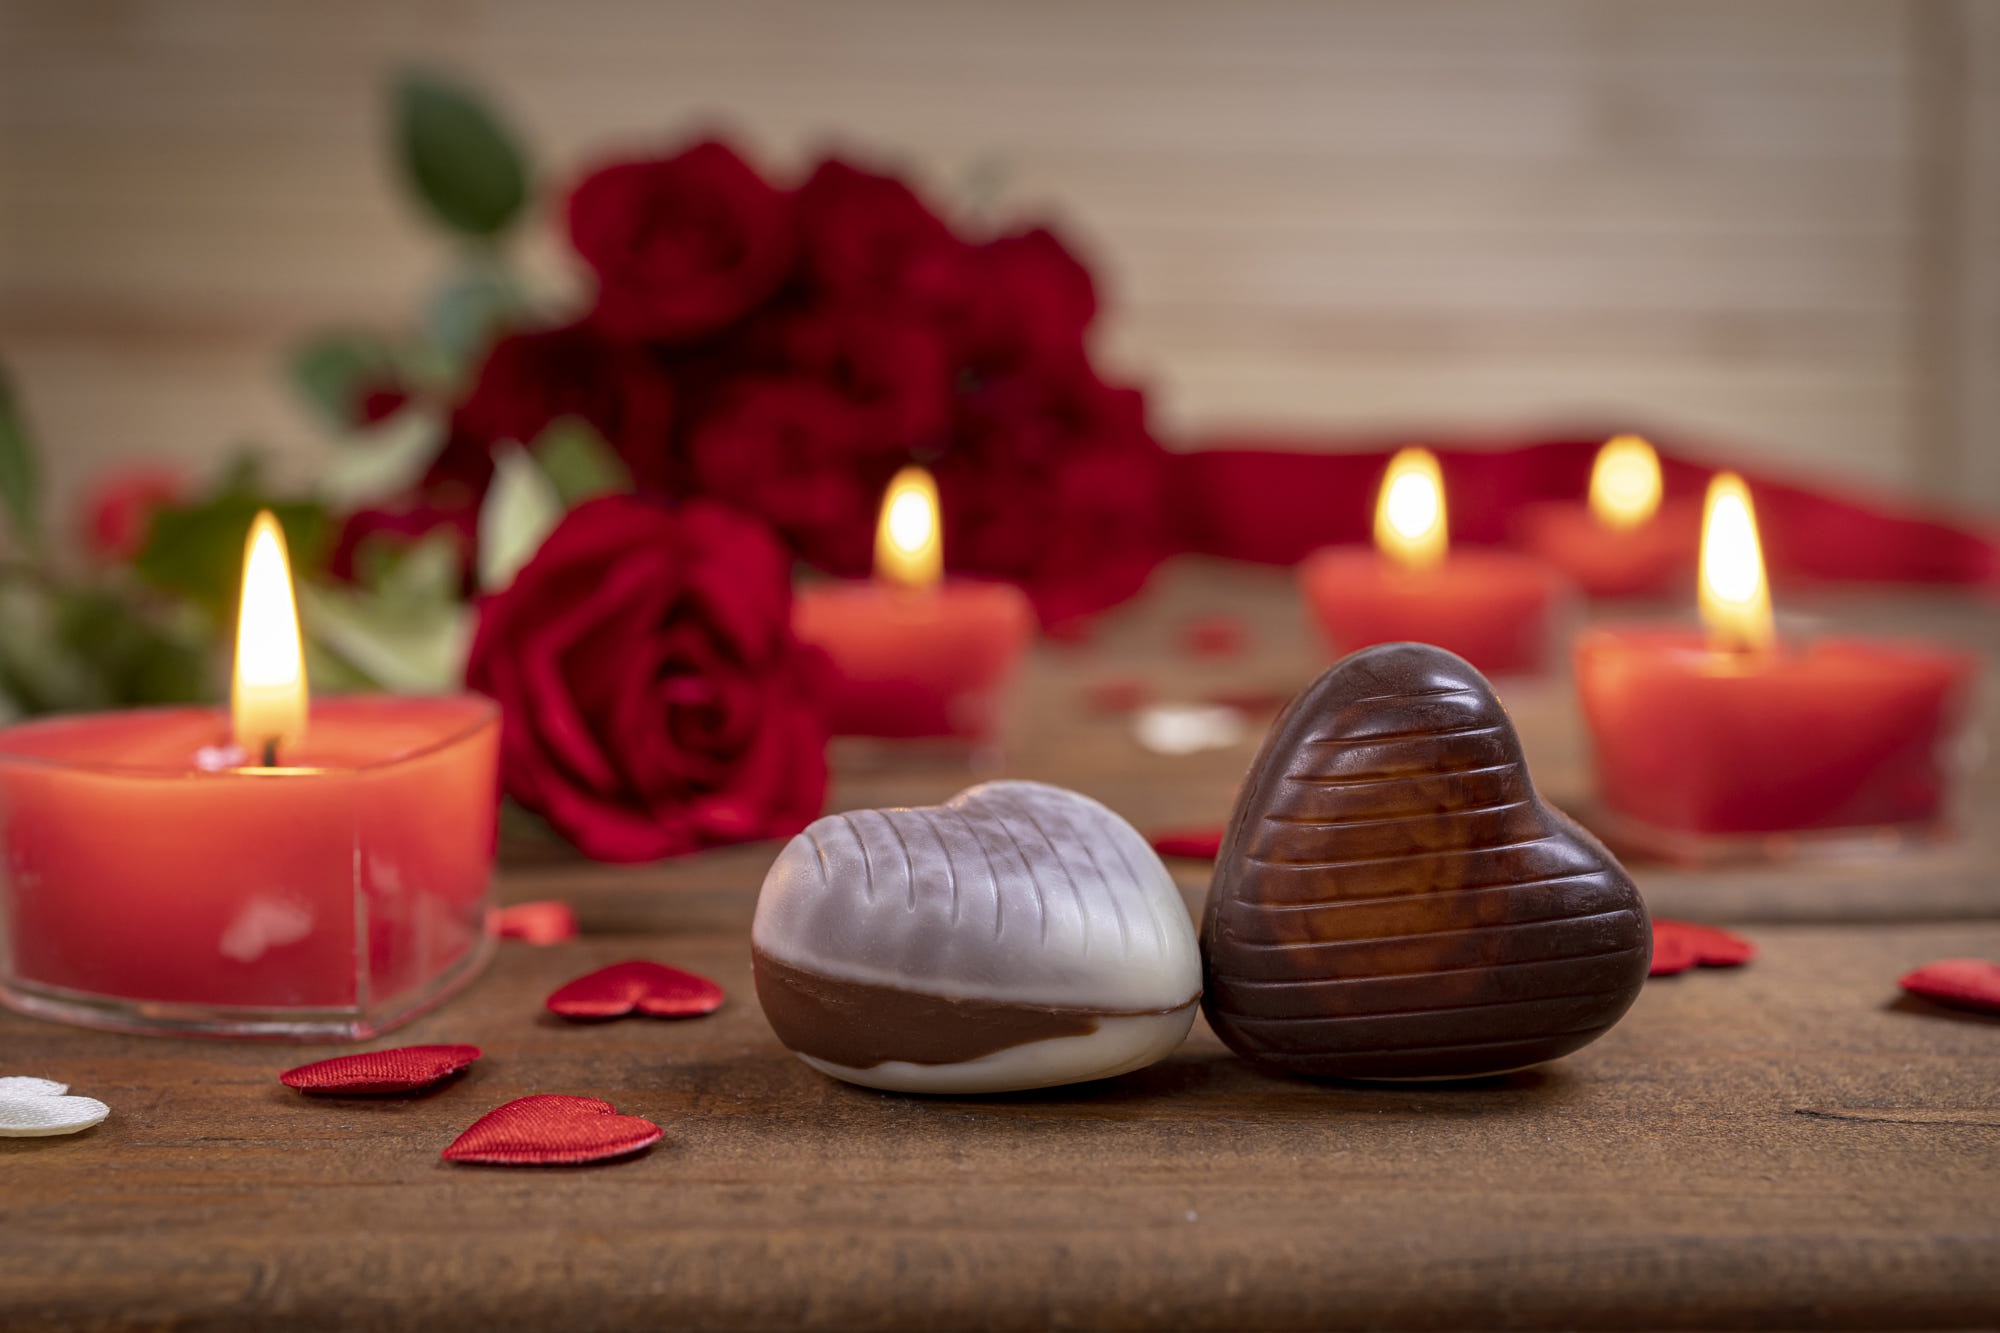 Скачать обои бесплатно Шоколад, Любовь, Свеча, День Святого Валентина, Праздничные картинка на рабочий стол ПК